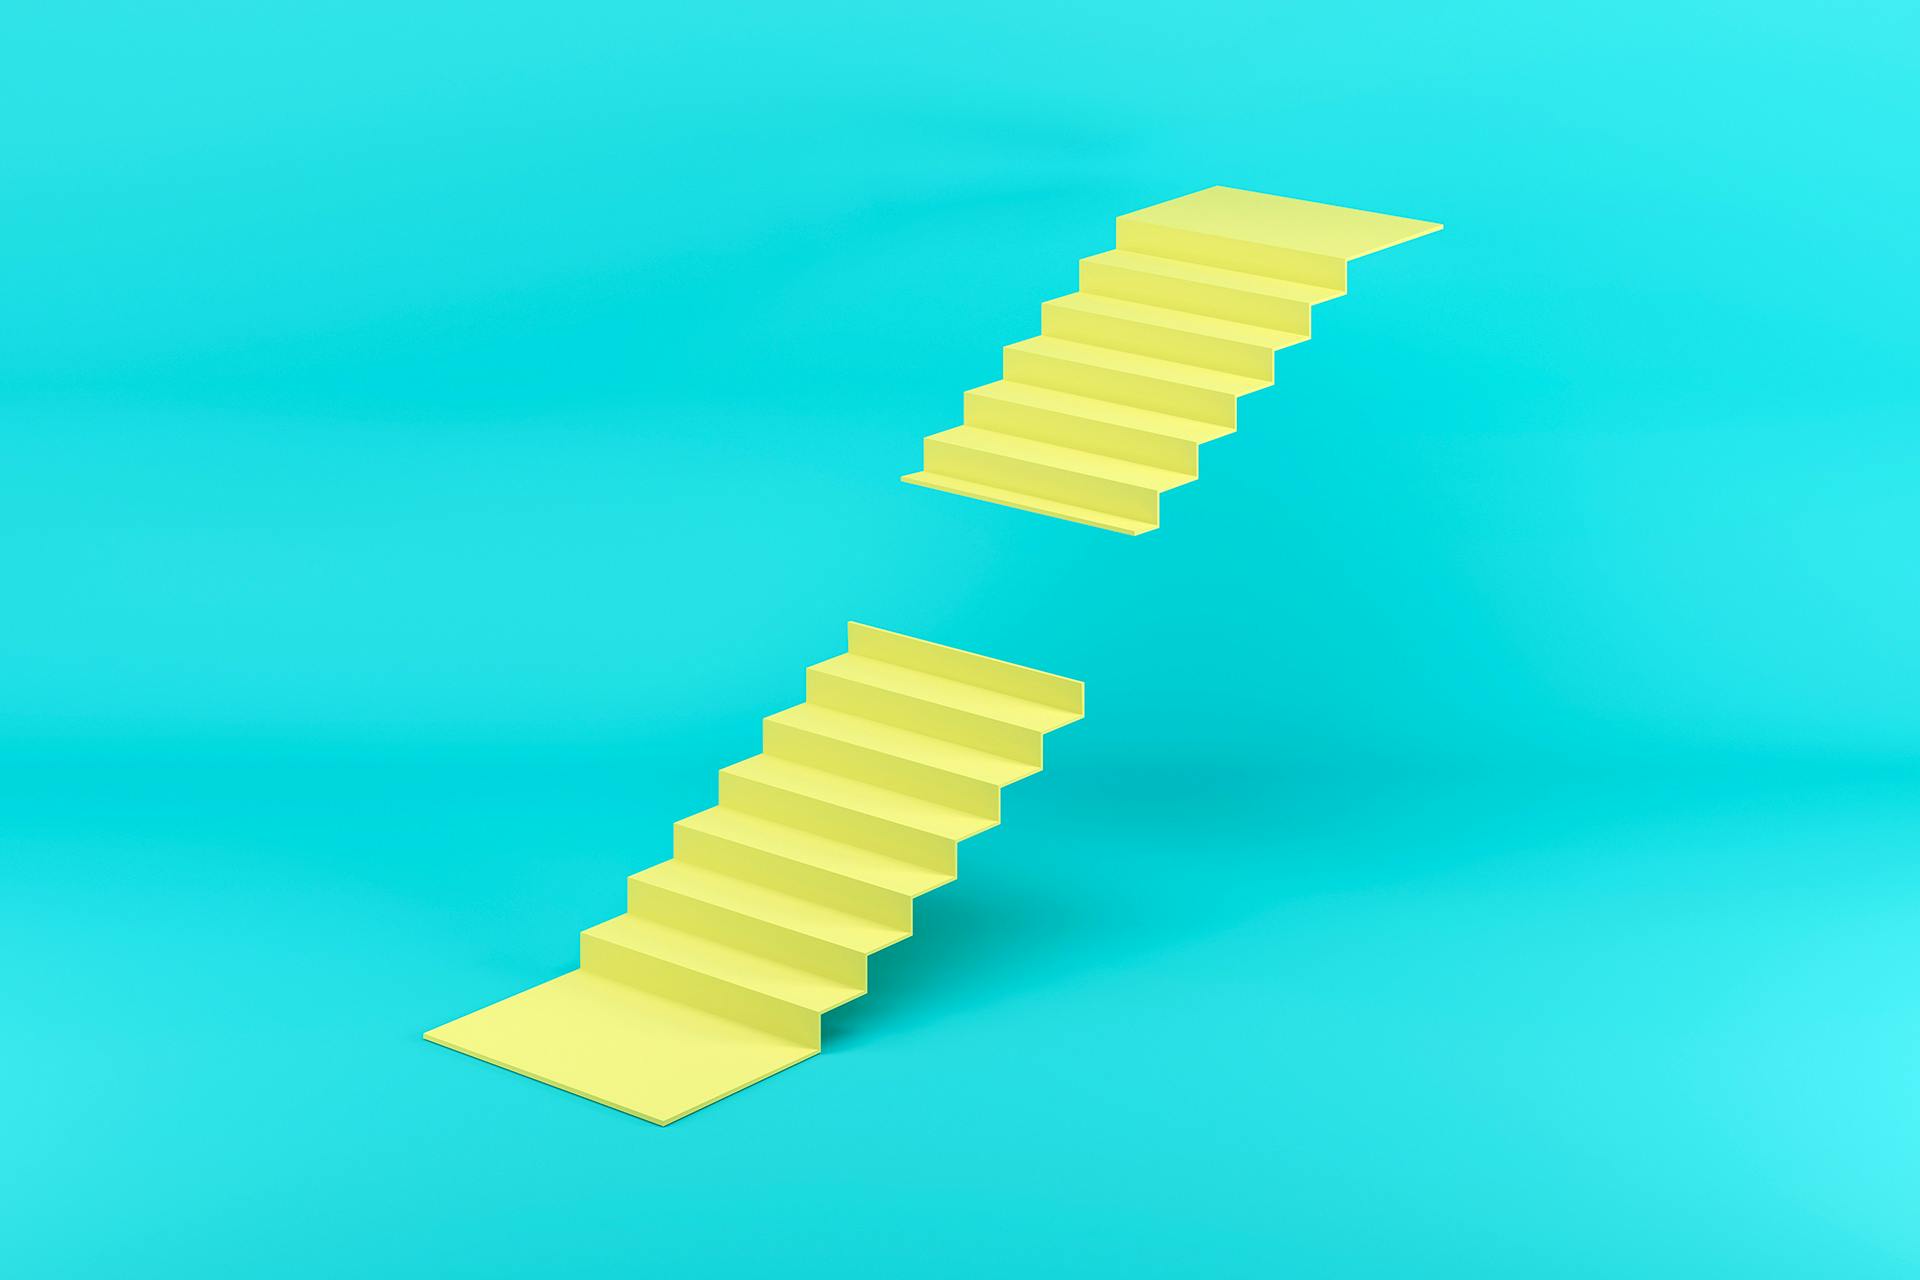 一个黄色的楼梯缺少中间的一部分，向任何敢于达到另一边的人提出挑战。此图像被用作博客文章的缩略图，解释了过去几年的最佳社交媒体挑战。bv伟德体育安卓版